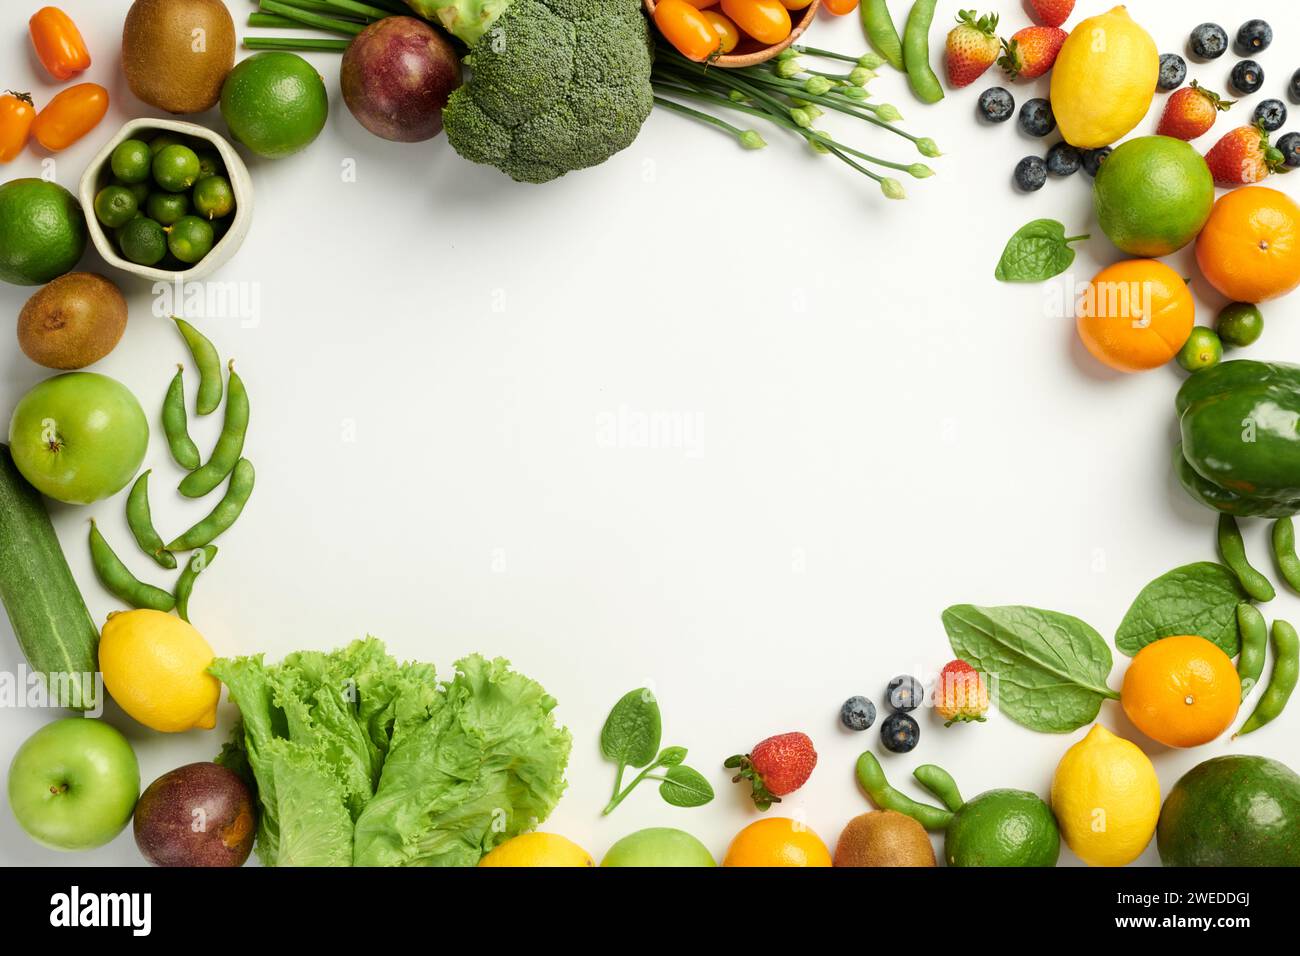 Fond alimentaire sain avec des fruits et légumes biologiques Banque D'Images